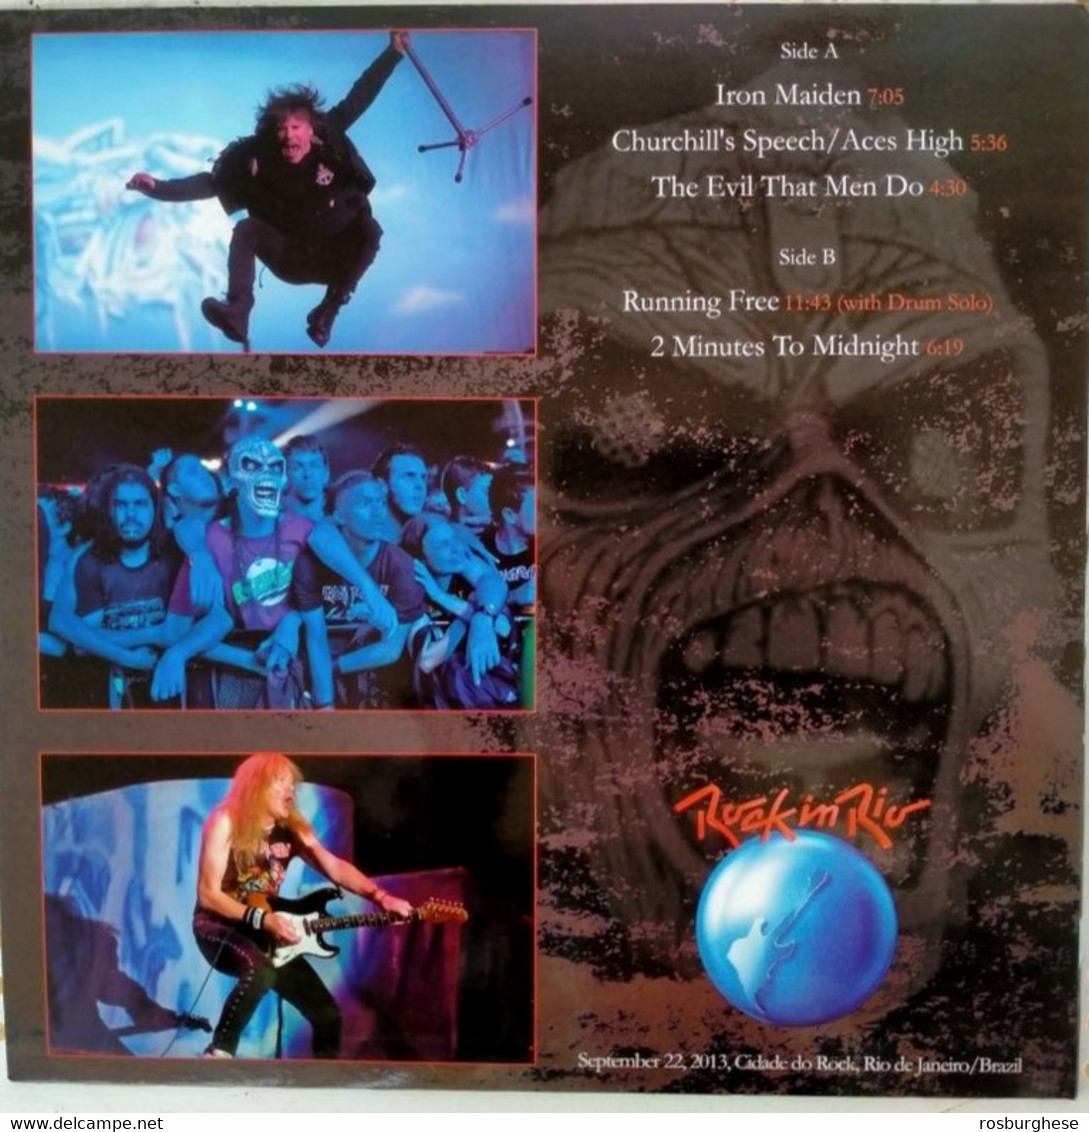 Iron Maiden Air Raid Siren VINILE LP Trasparente 150 Copie - Limitierte Auflagen